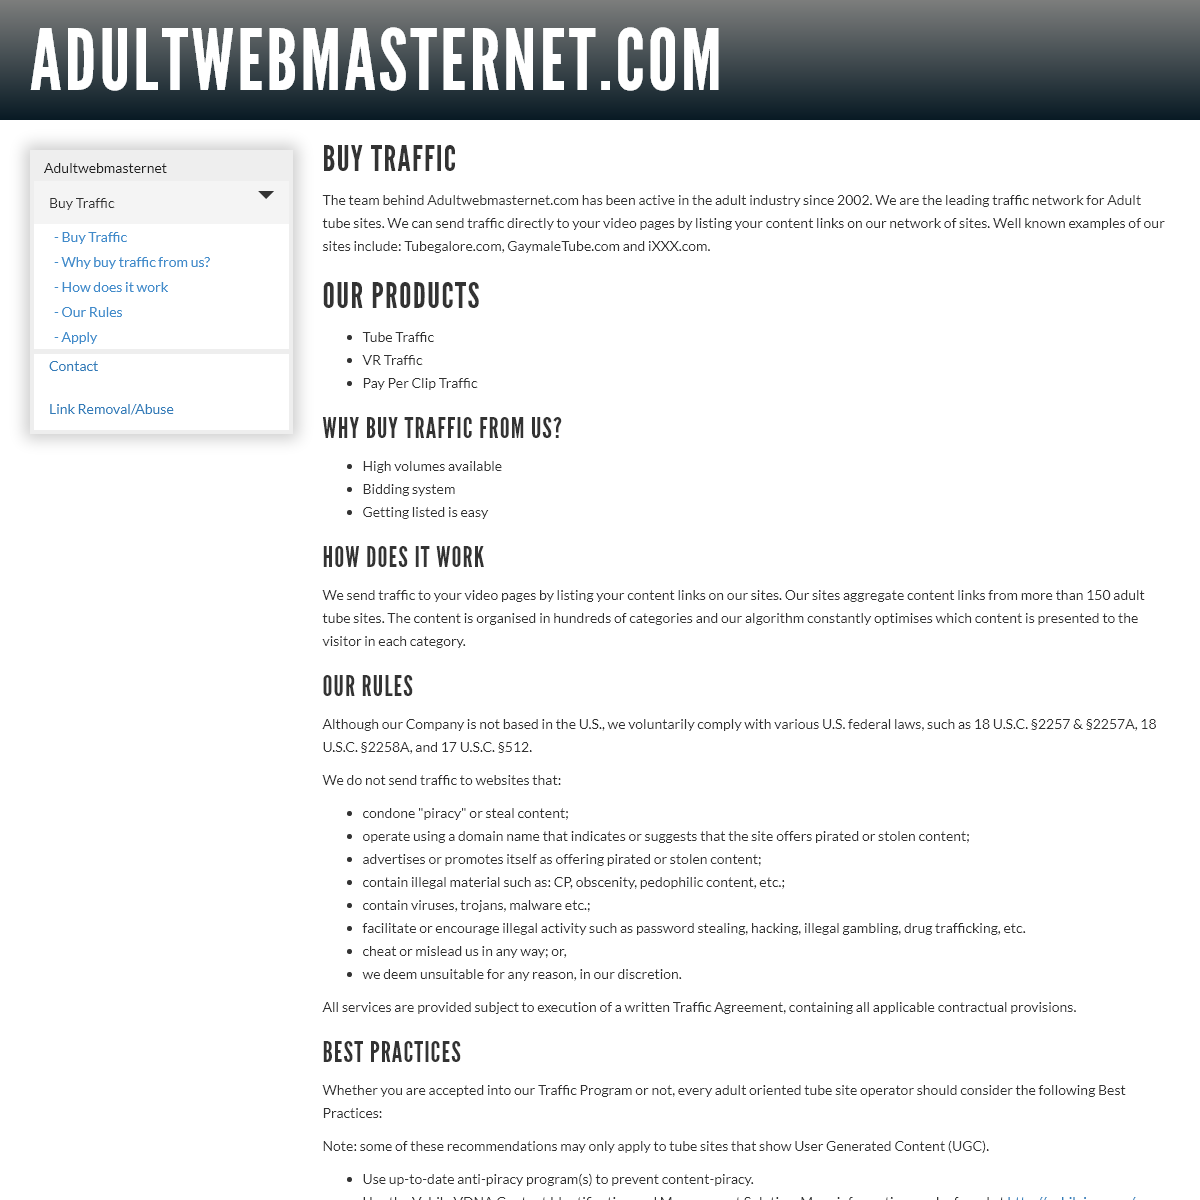 A complete backup of adultwebmasternet.com